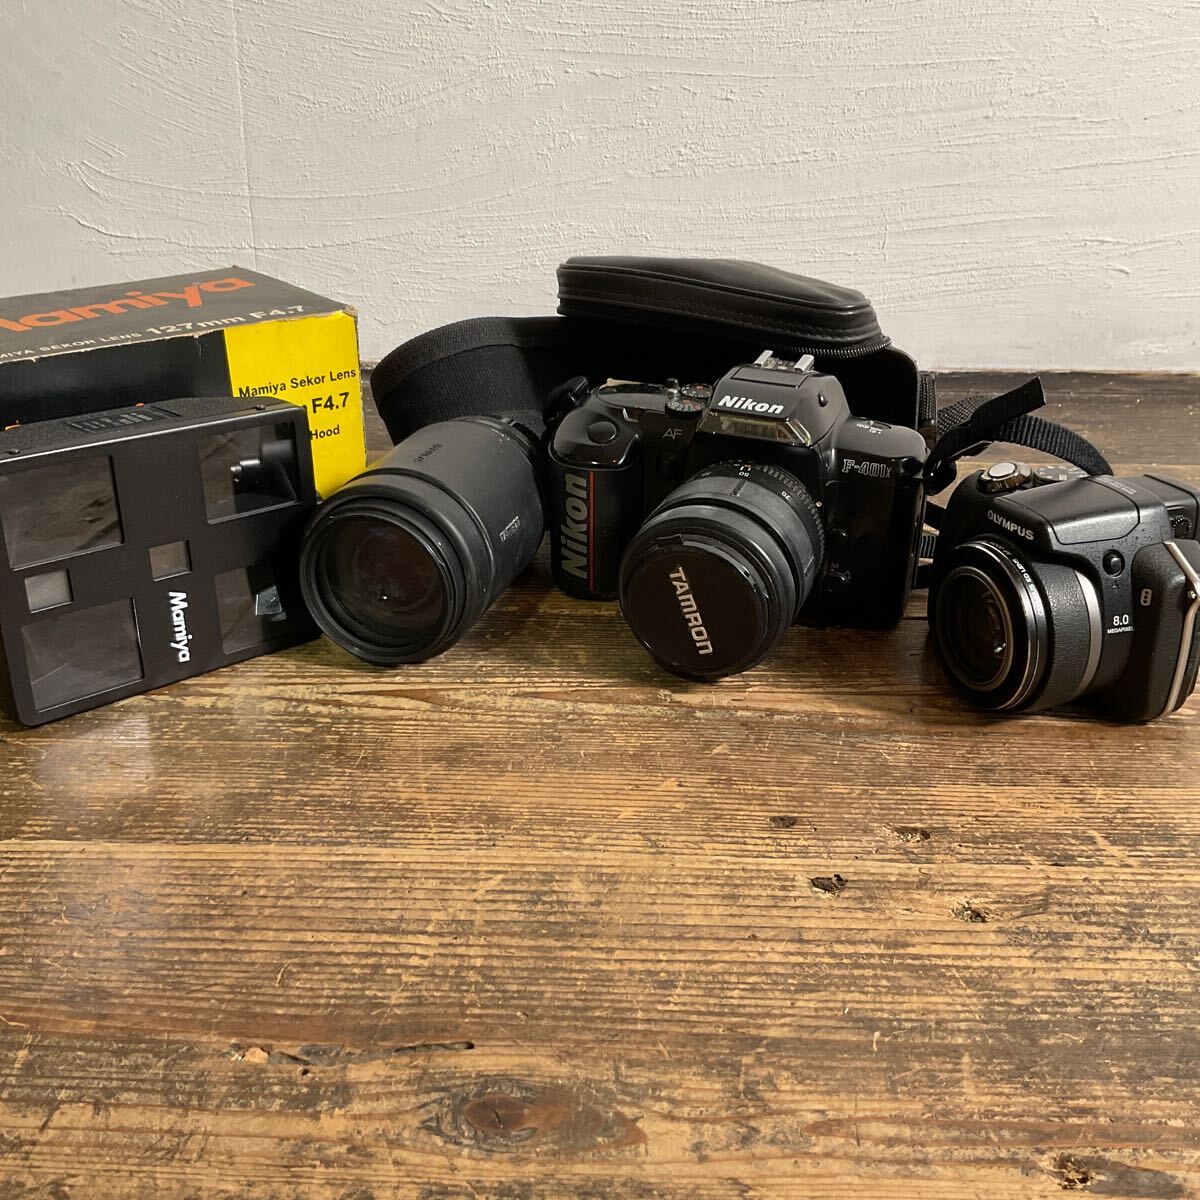 ほ06/デジタル一眼レフカメラ OLYMPUS Nikon フィルムカメラ SP-560UZ F-401x TAMRON Mamiya 127mmF4.7 LensHood まとめて 5個 動作未確認の画像1